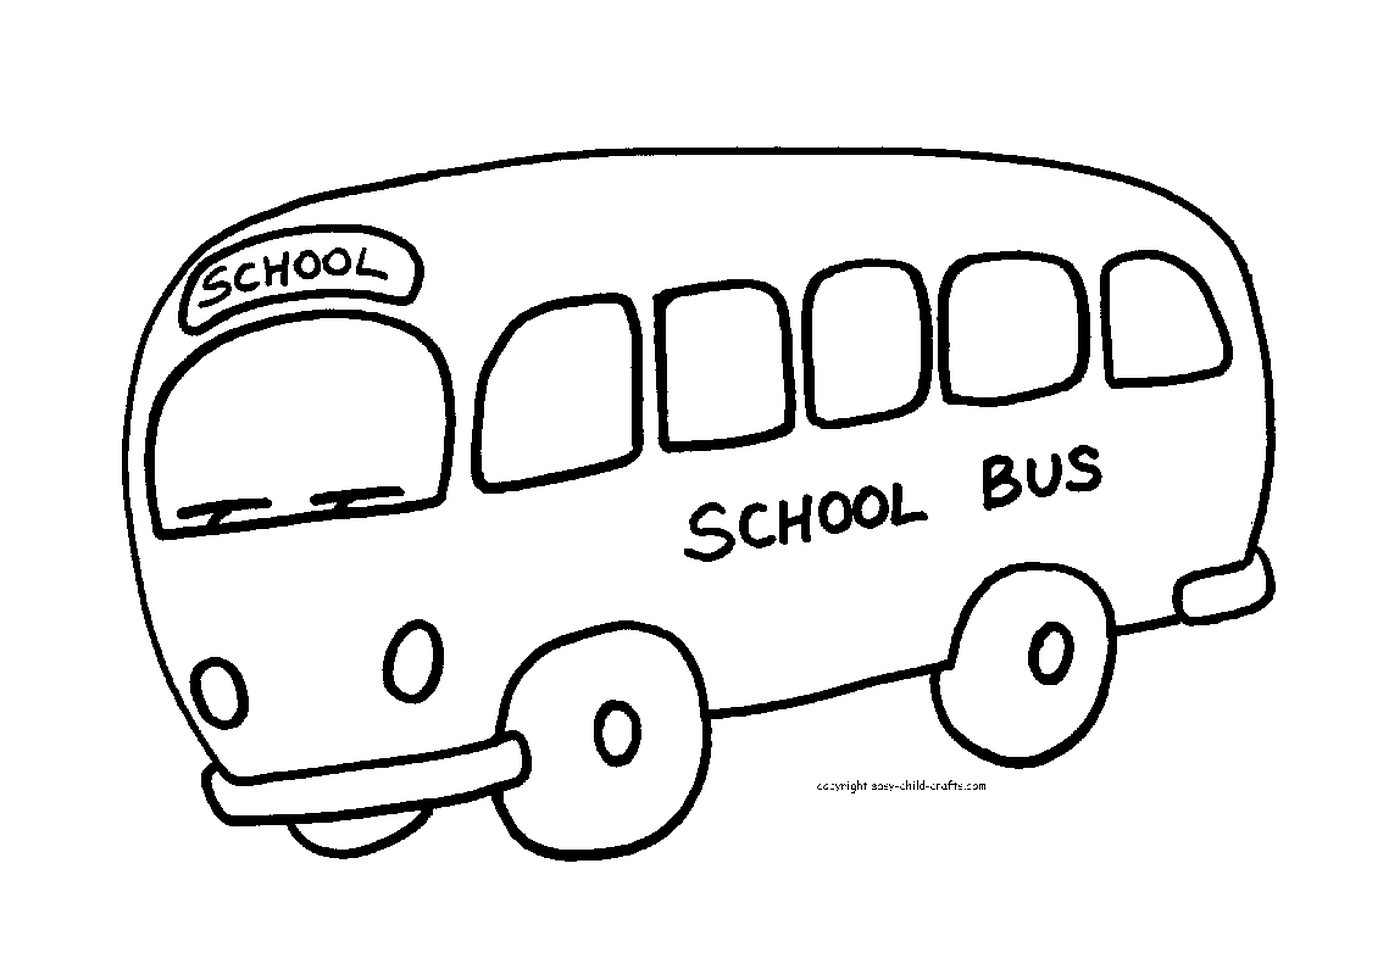  校车准备迎接学生 